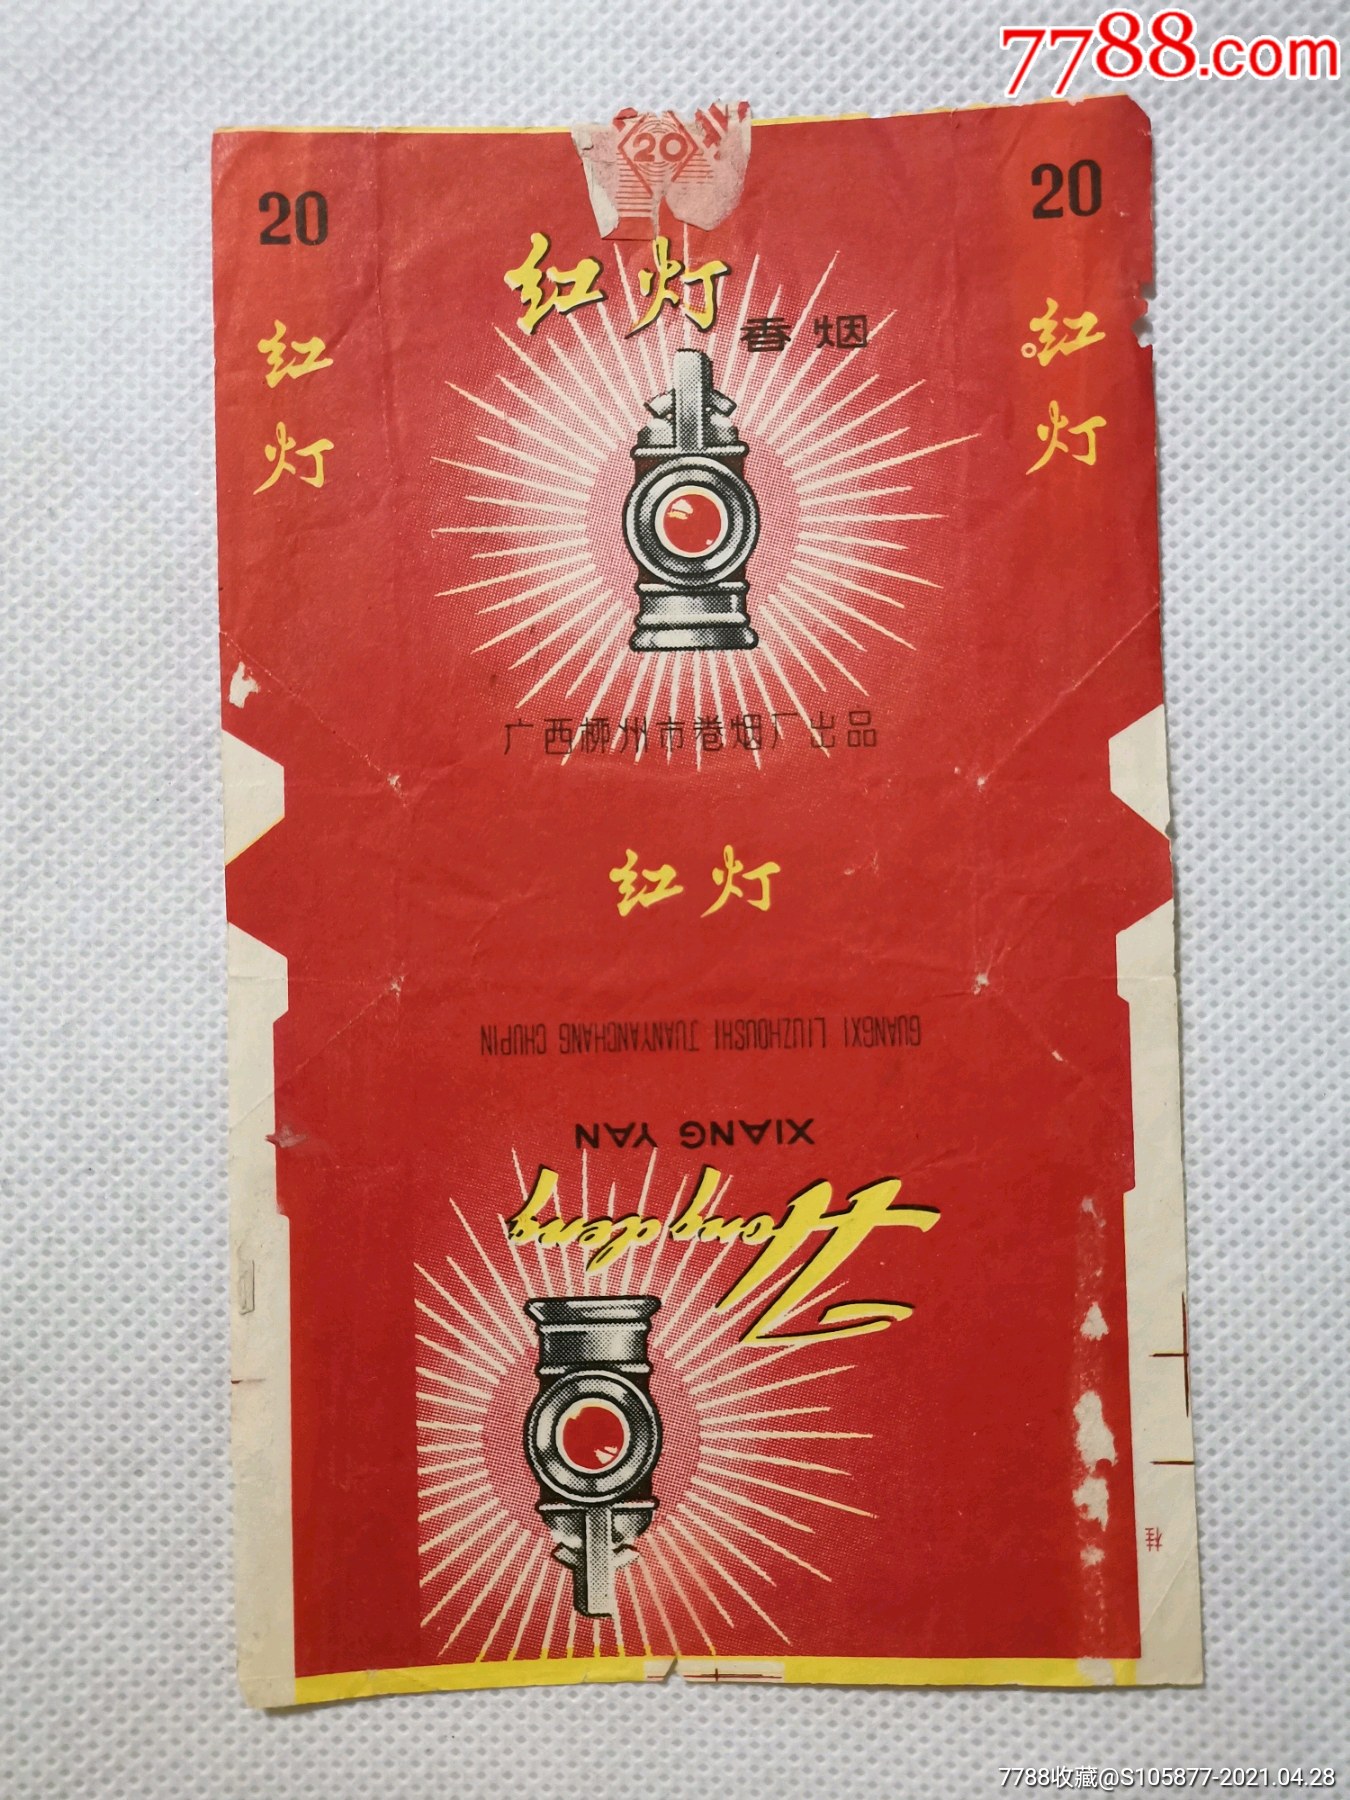 广西柳州市卷烟厂出品的红灯香烟烟标一张